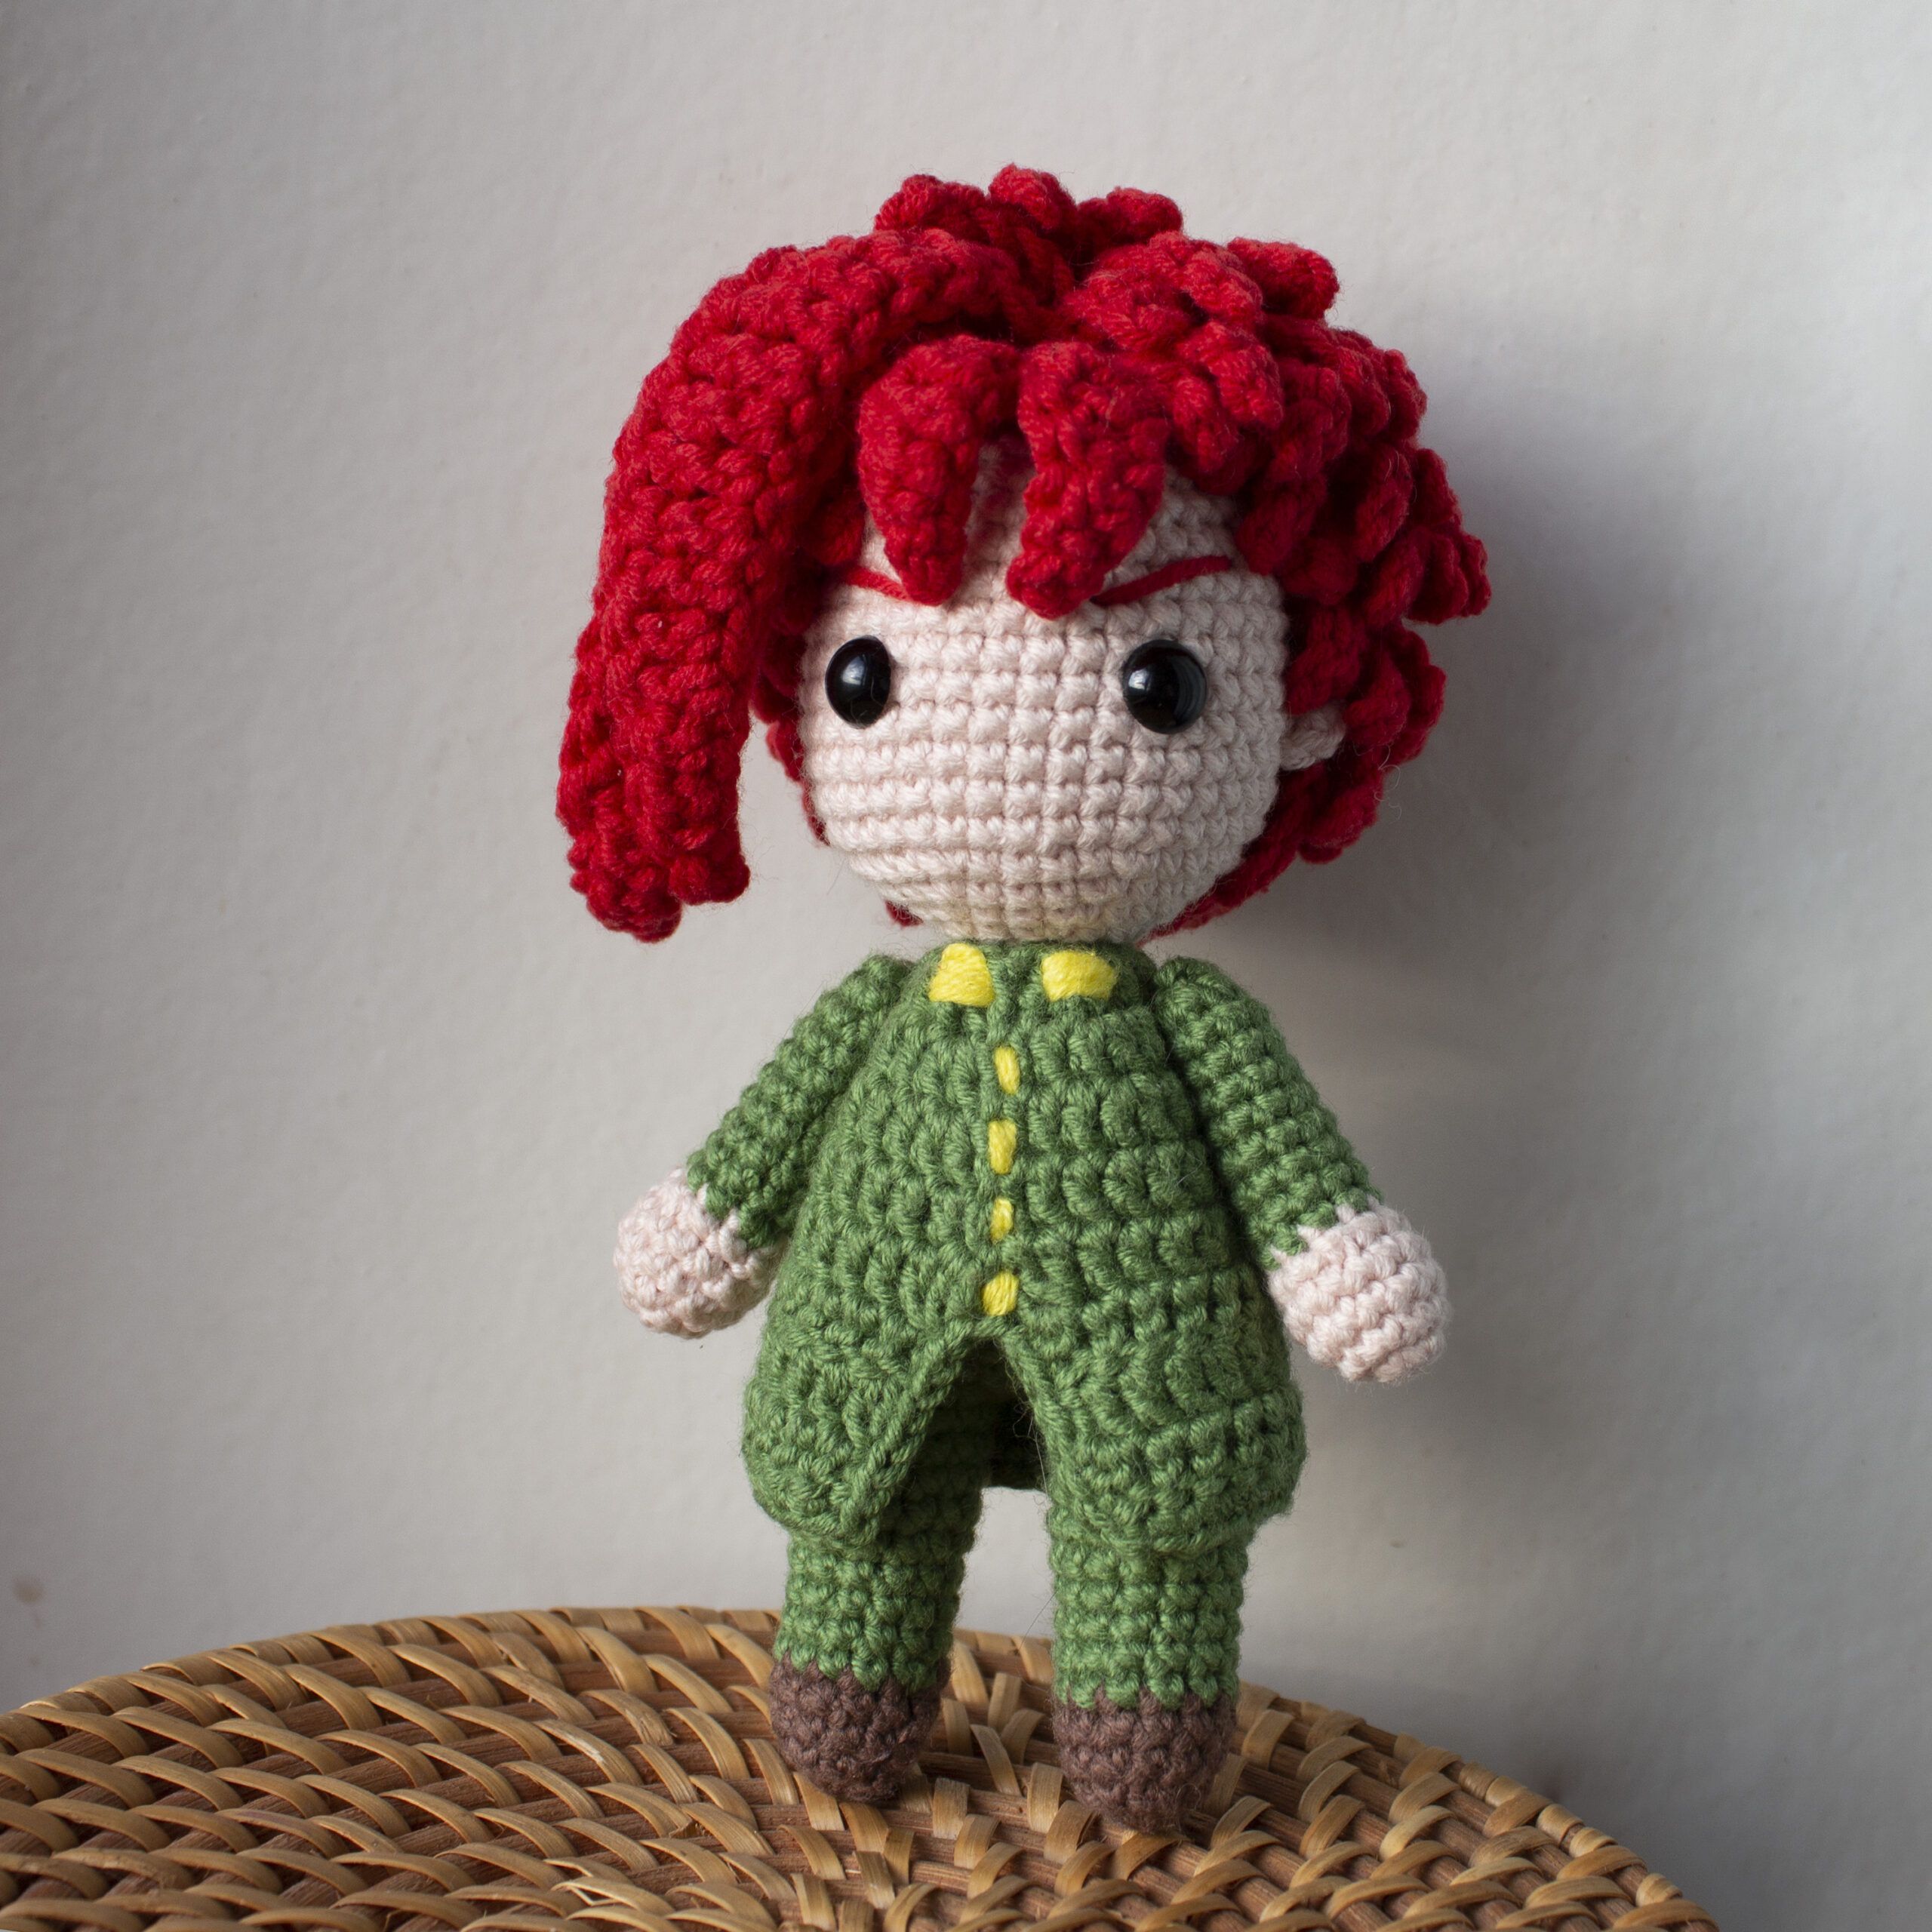 Crochet Doll SIZE: 5